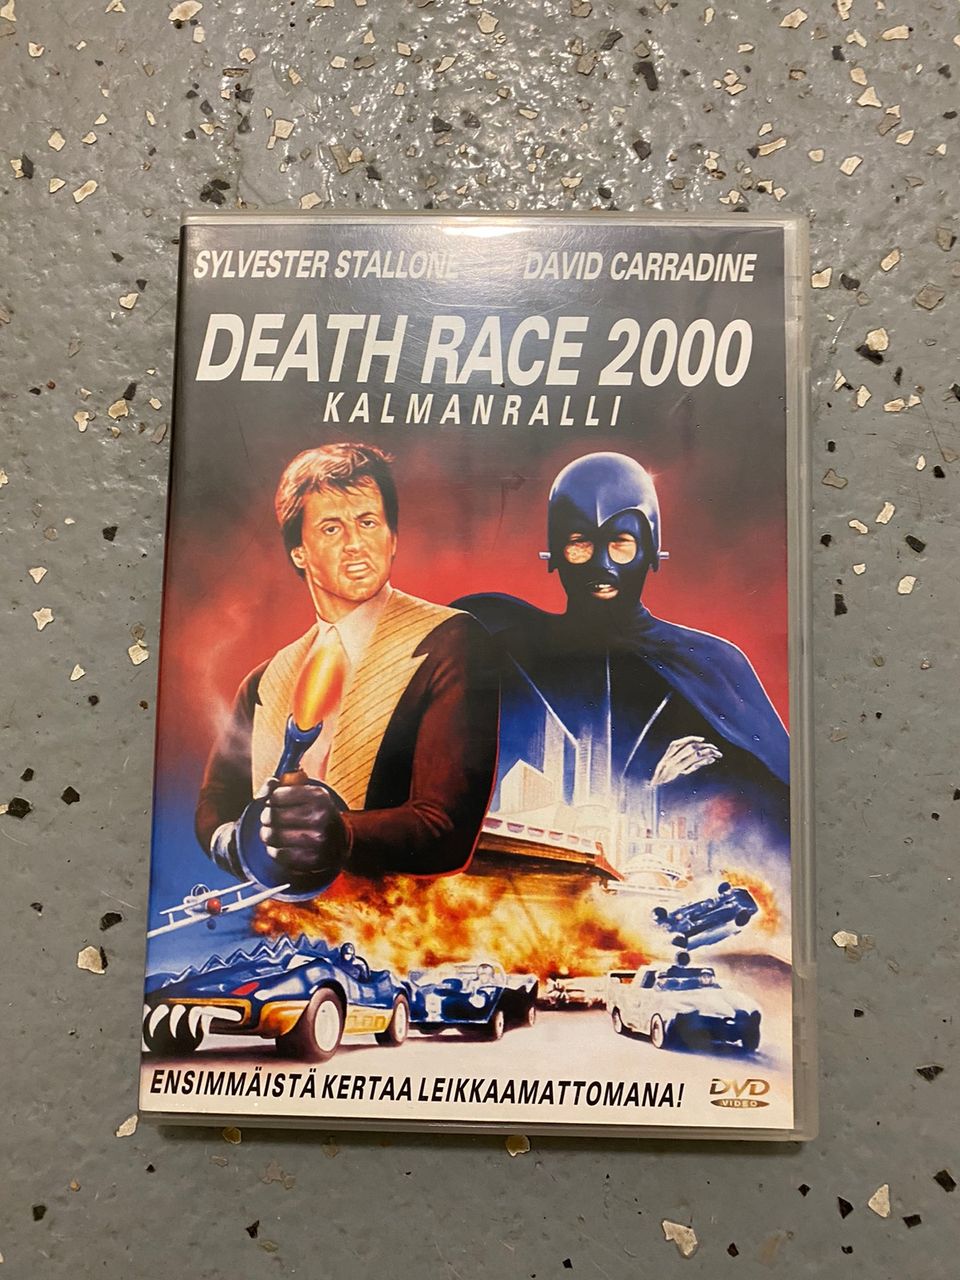 Death race 2000 dvd